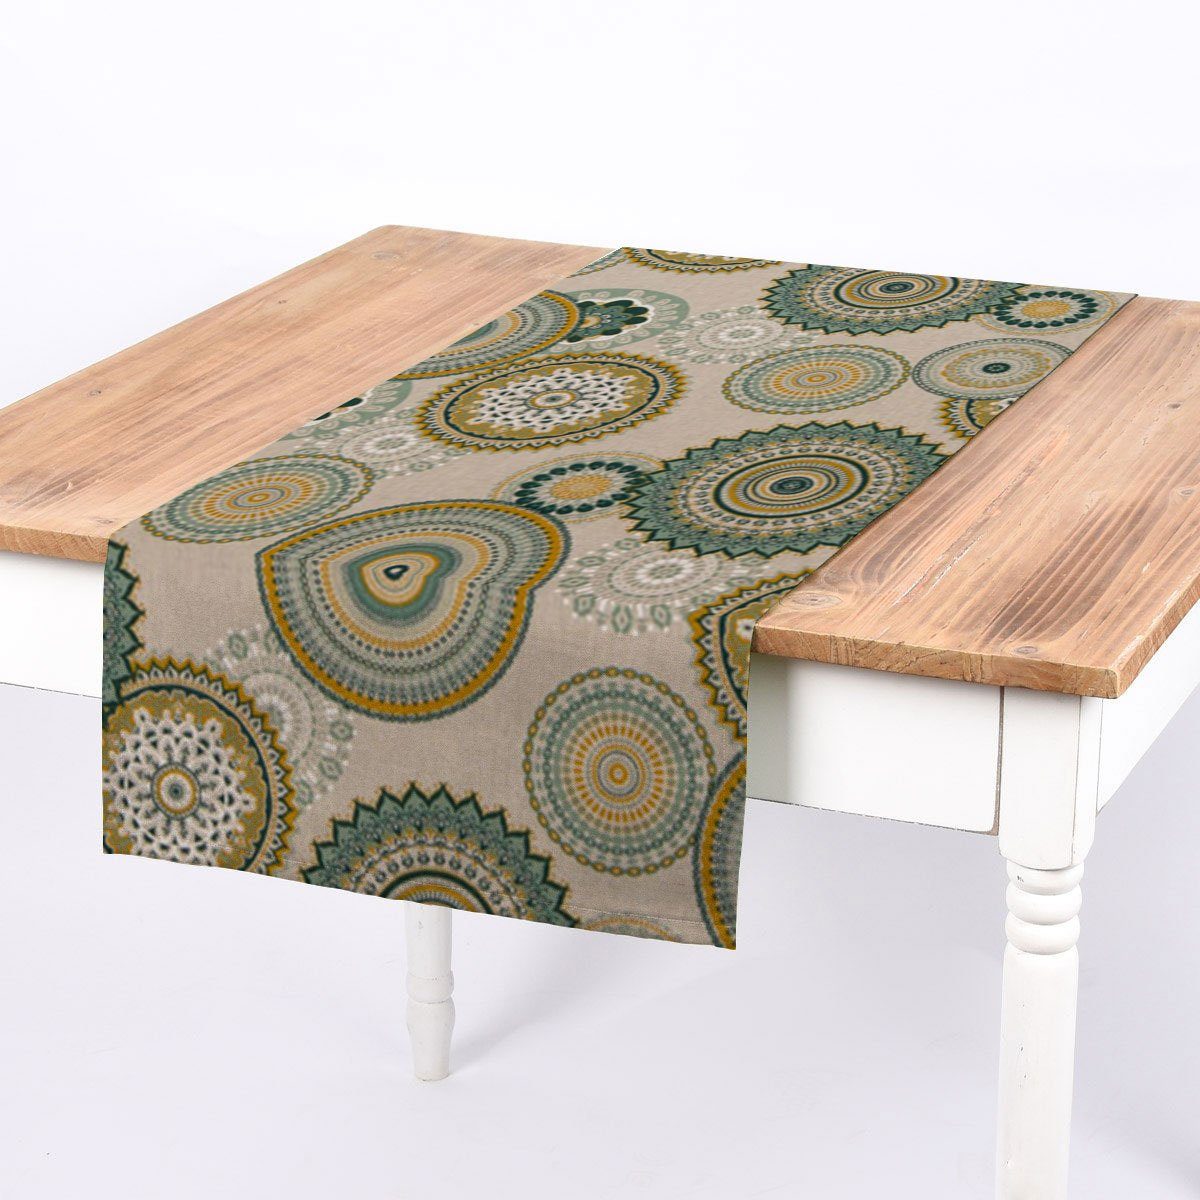 SCHÖNER LEBEN. Tischläufer SCHÖNER LEBEN. Tischläufer Mandalas natur grün 40x160cm, handmade